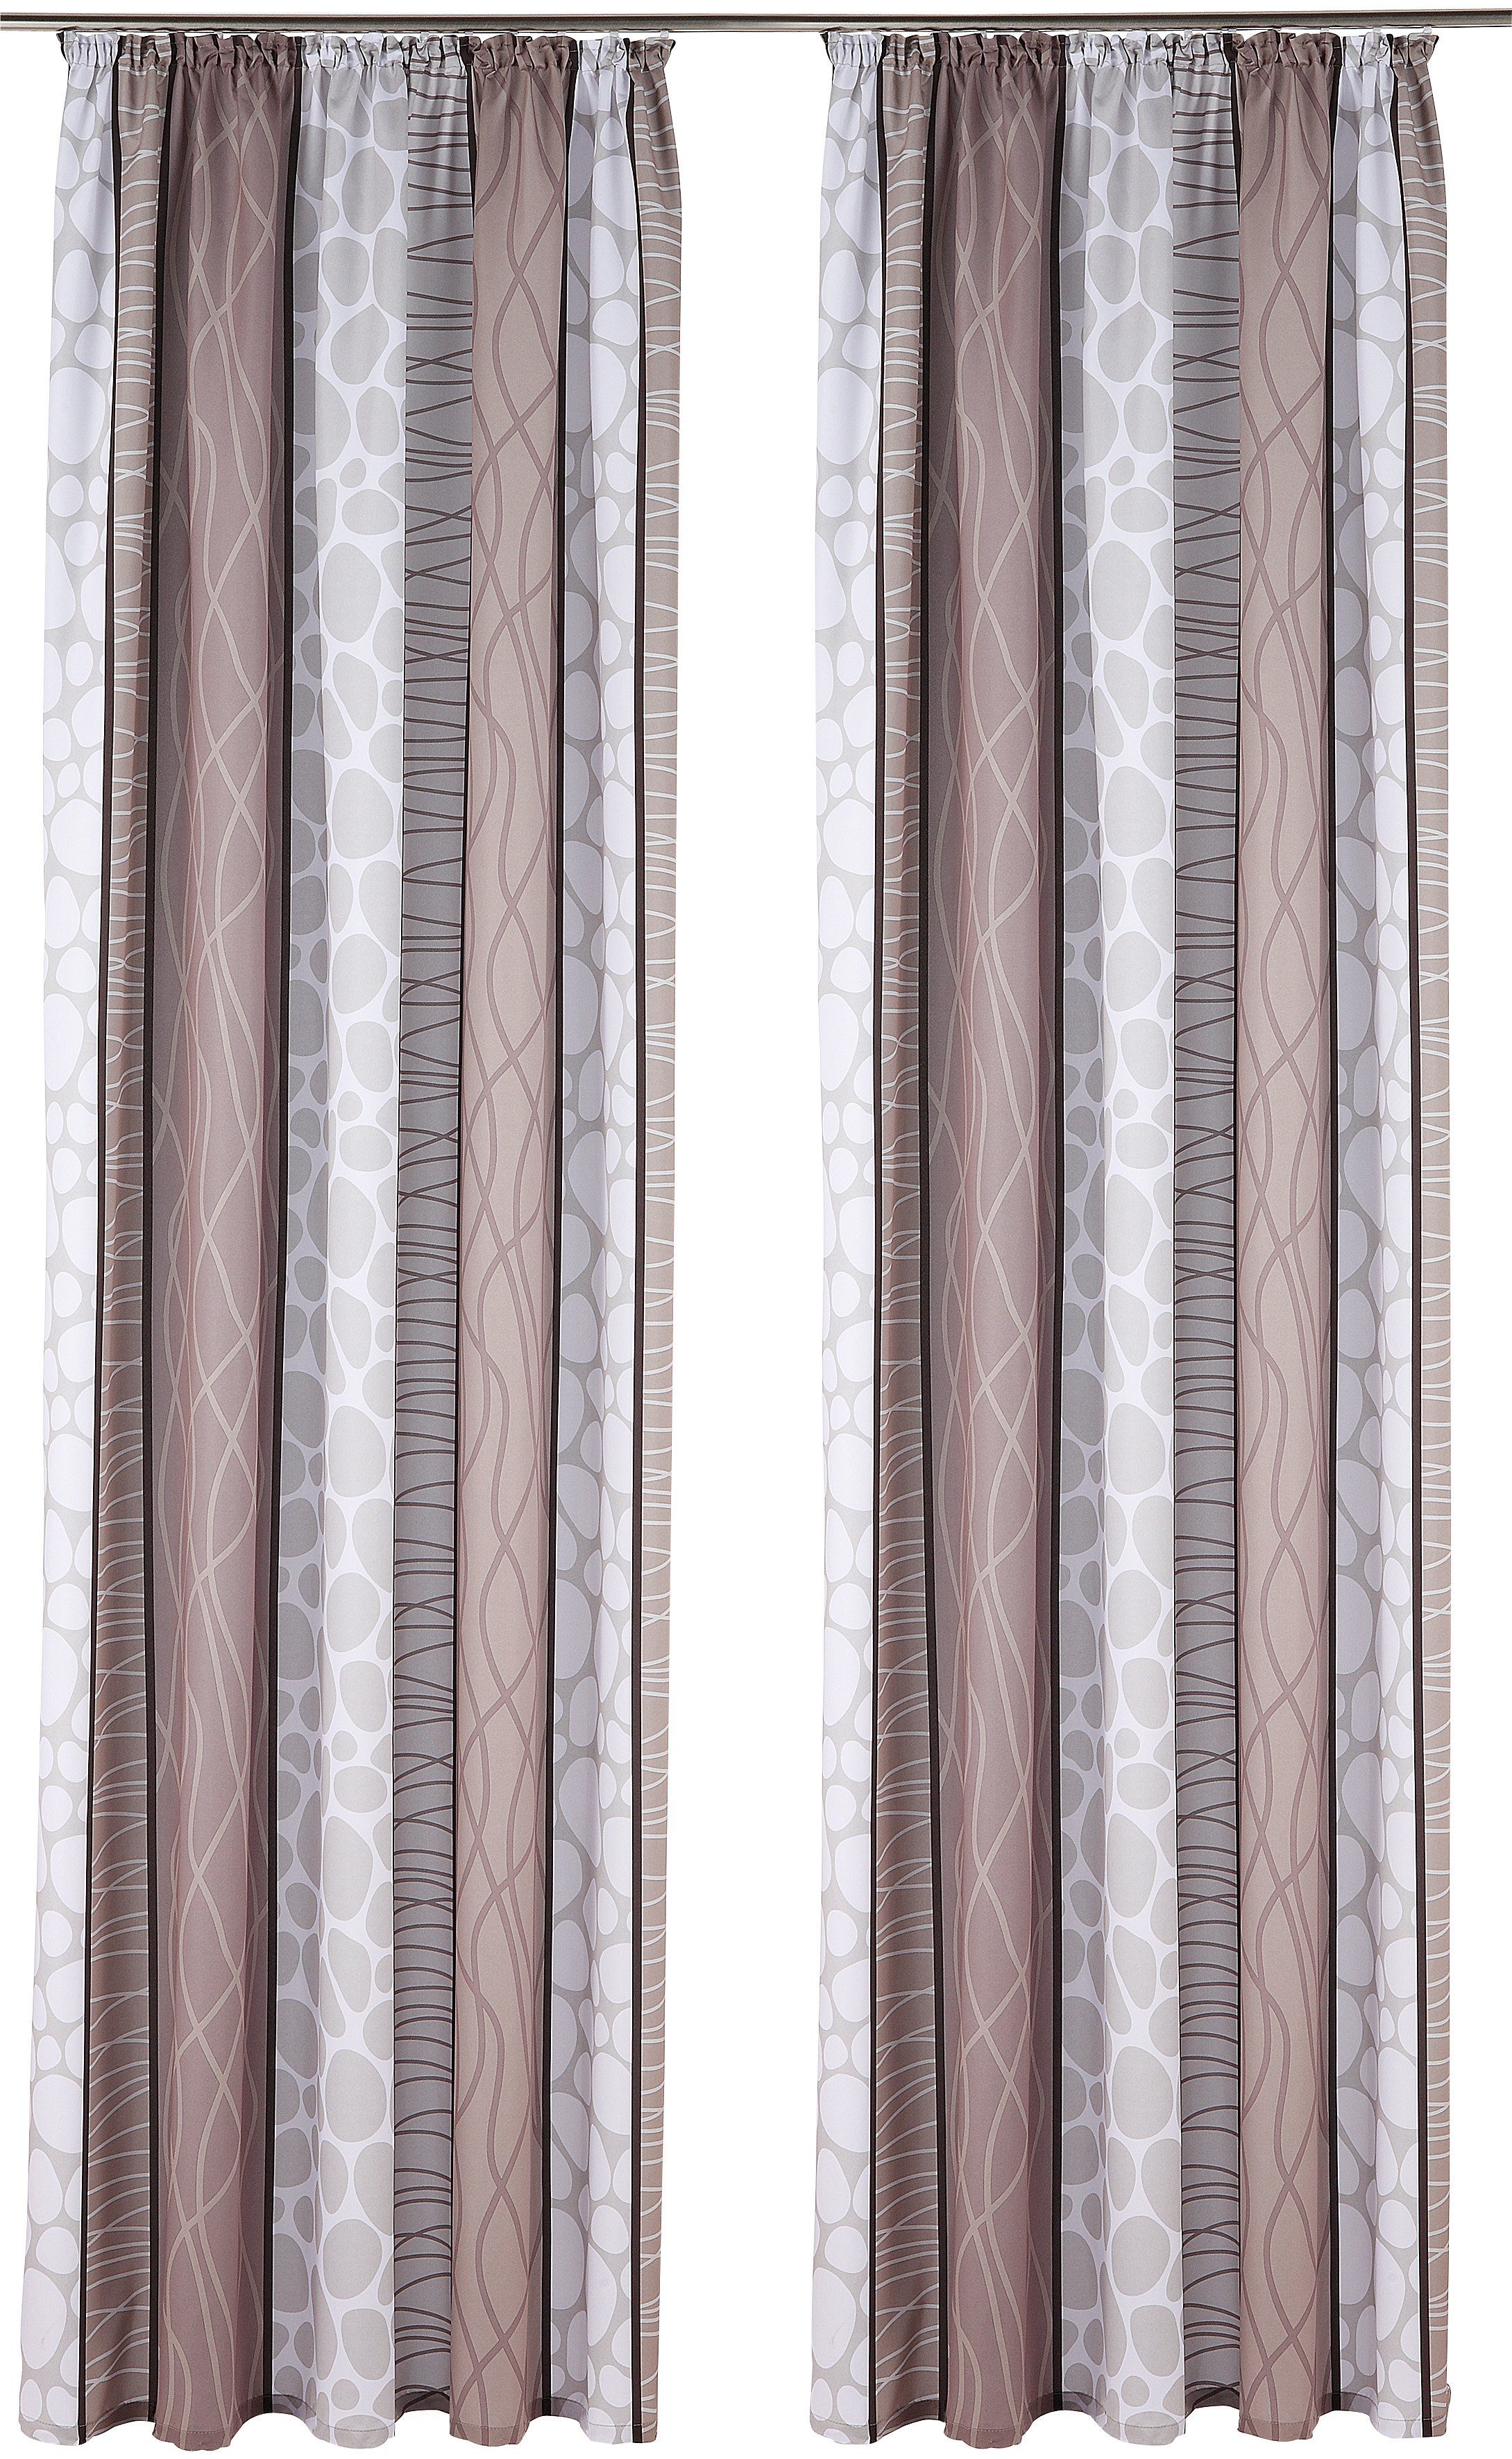 Flächen Gardine Vorhang Schal grau anthrazit edel schimmer w Neu 45 x 260 